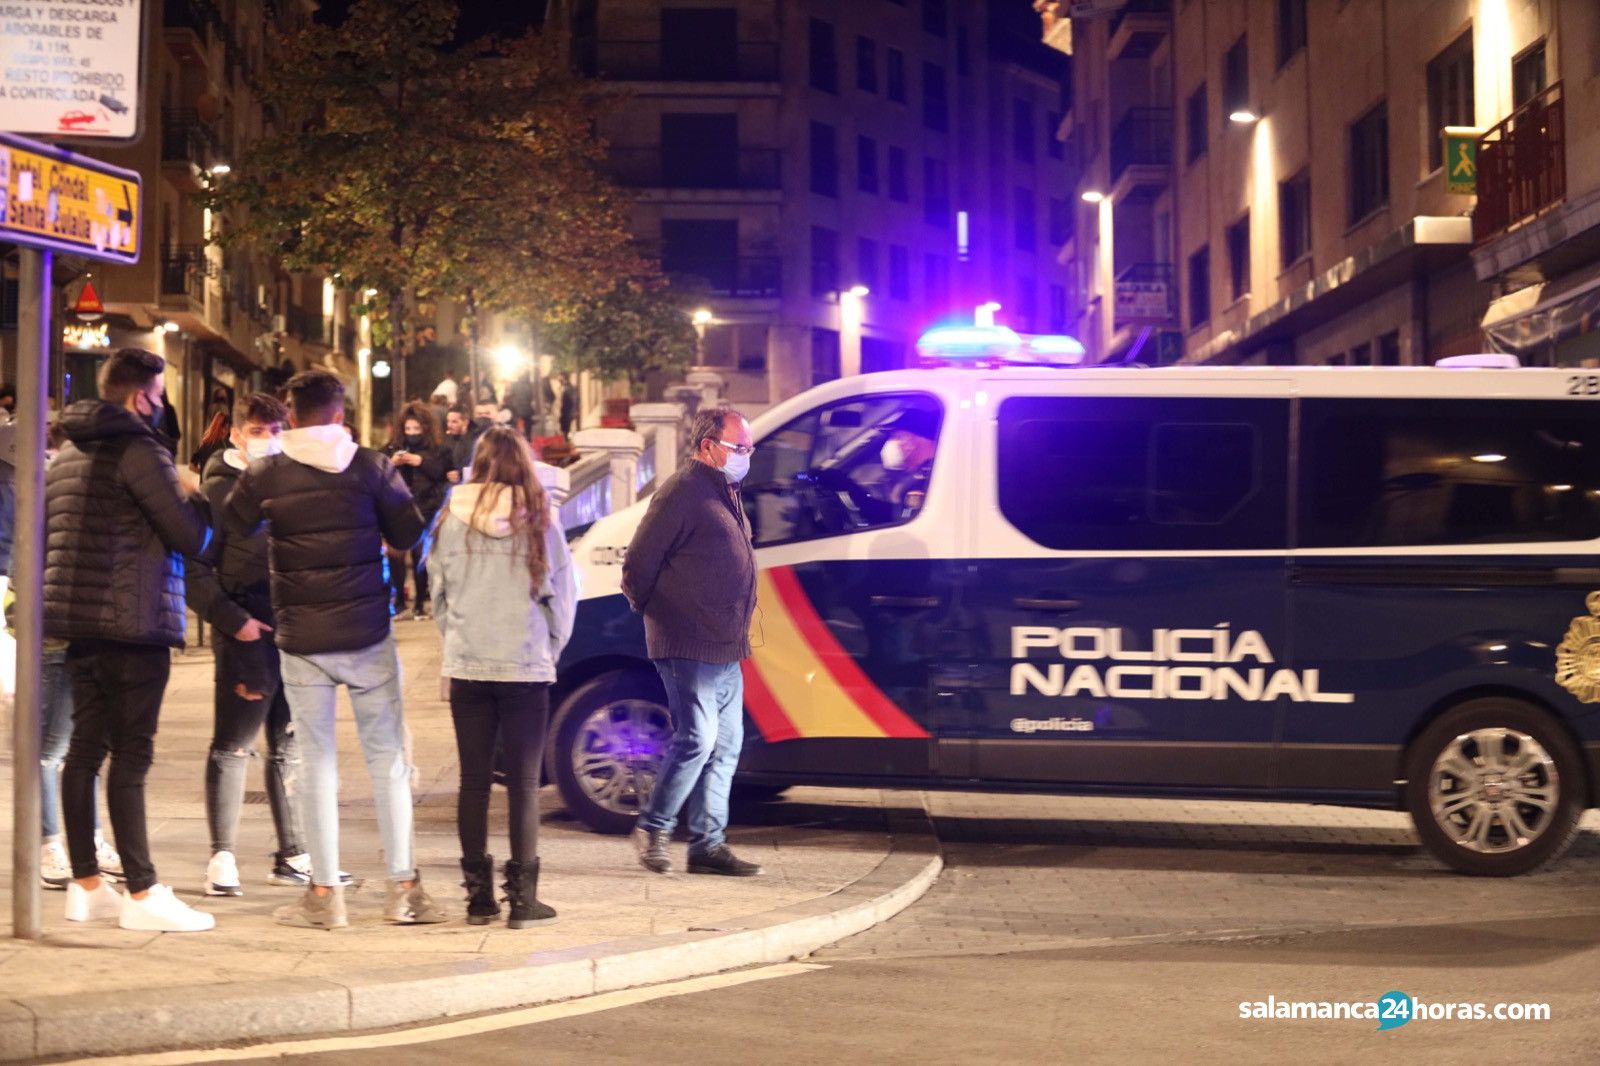  Policia nacional noche confinamiento Image 2020 10 18 at 00.03.30 (1) 